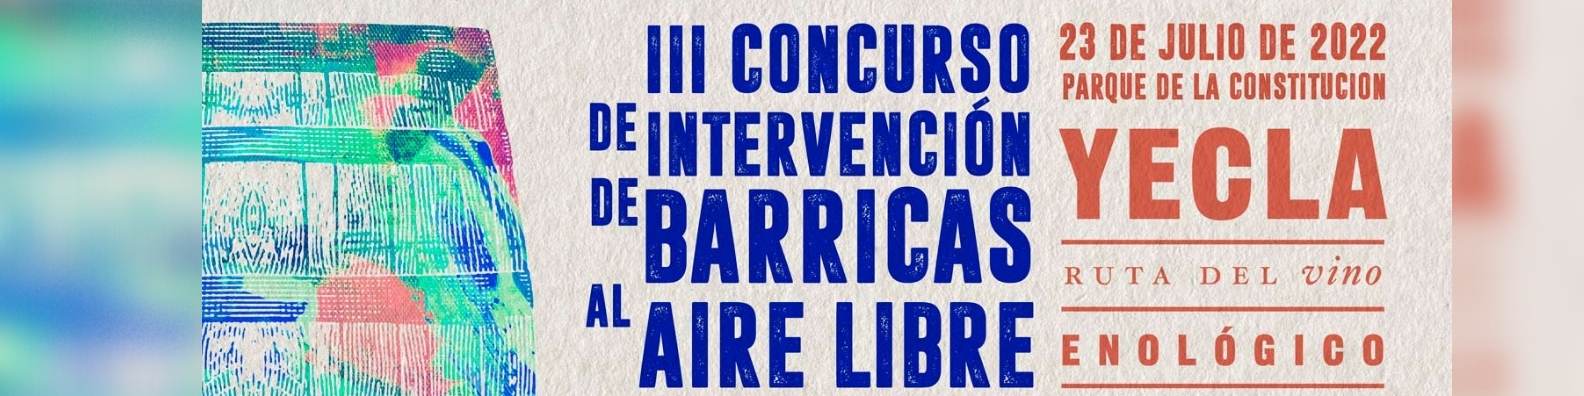 III CONCURSO DE INTERVENCIÓN DE BARRICAS AL AIRE LIBRE